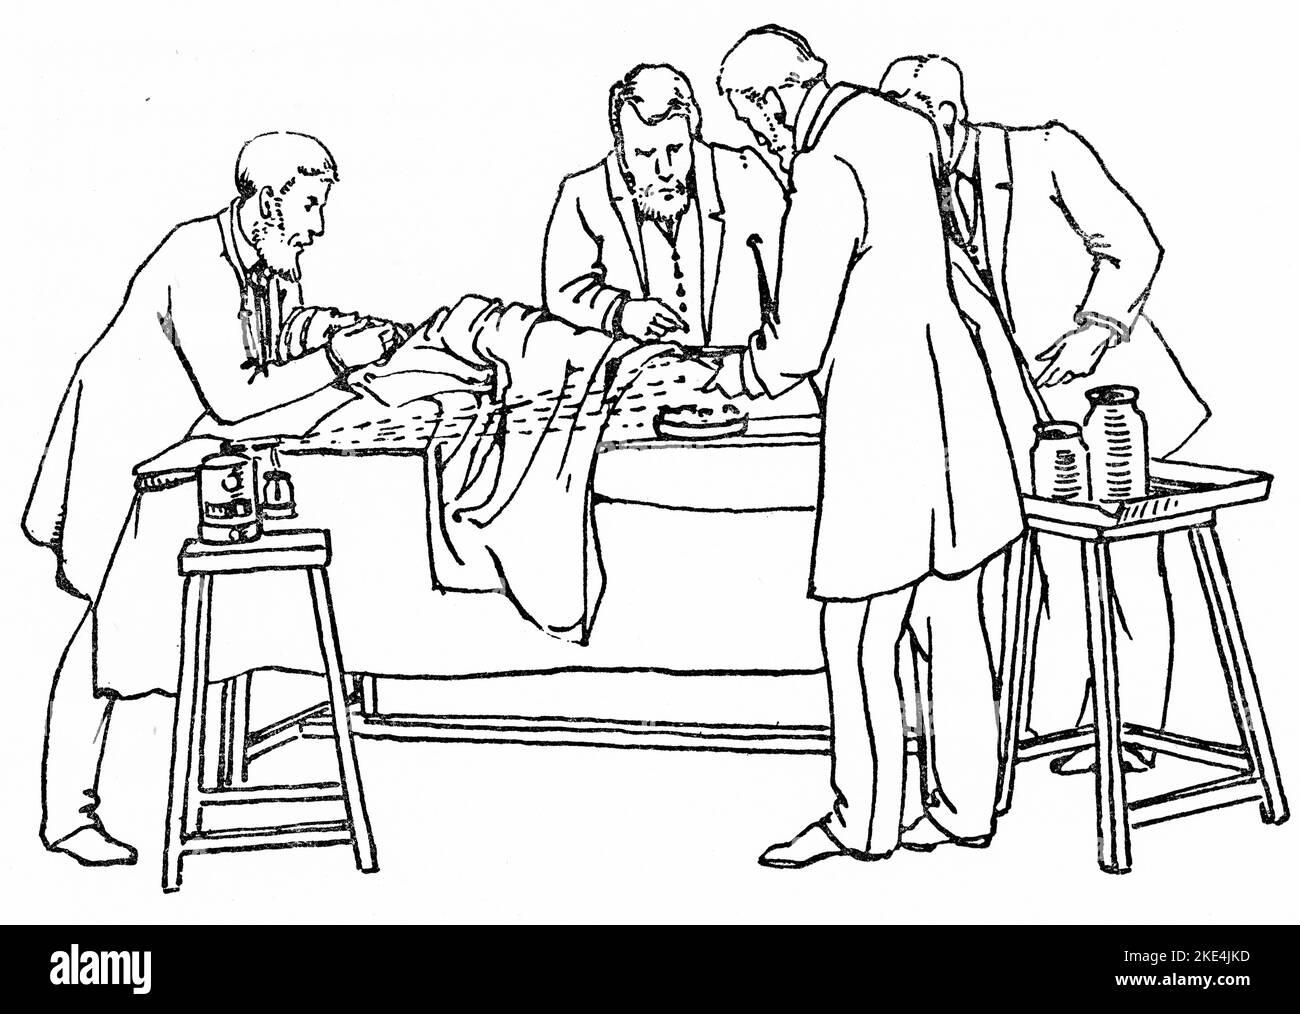 Fonctionnement du 1880 avec pulvérisation de Lister en cours d'utilisation. L'appareil de pulvérisation à vapeur carbolique de Joseph Lister a été un grand progrès dans la chirurgie antiseptique et a été utilisé pour vaporiser une solution d'acide carbolique de cinq pour cent dans les salles d'opération pendant la chirurgie. Joseph Lister (1827-1912) était un chirurgien britannique, un scientifique médical, un pathologiste expérimental et un pionnier de la chirurgie antiseptique et de la médecine préventive. De 'la chirurgie antiseptique: Ses principes, la pratique, l'histoire et les résultats' par William Watson Cheyne (1852-1932). Banque D'Images